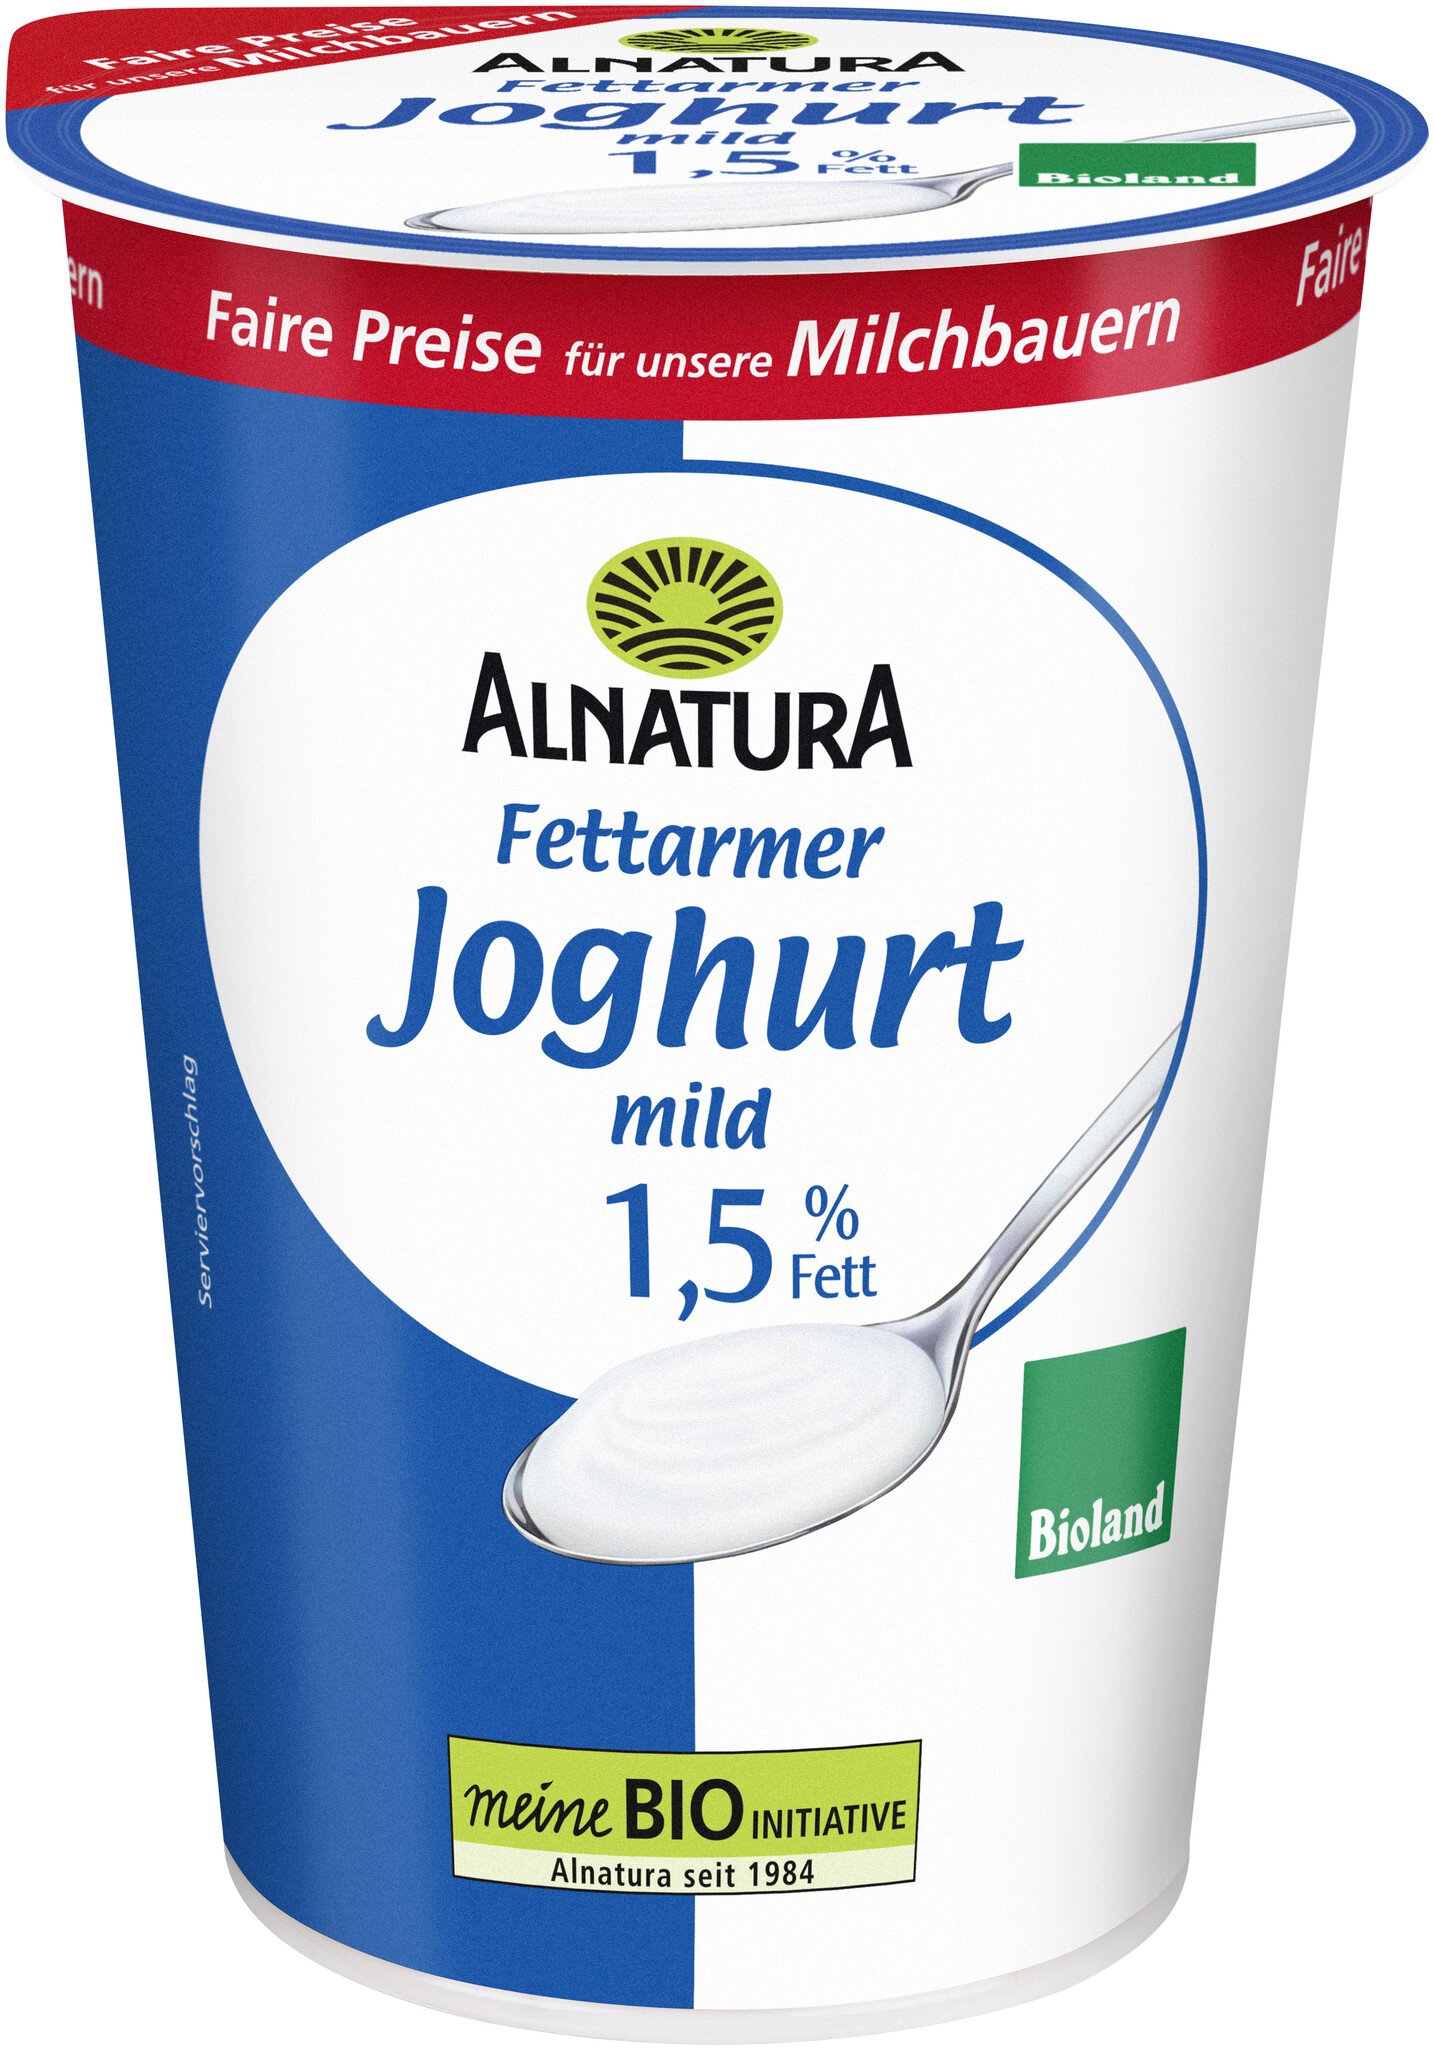 Fettarmer Joghurt mild, 1,5 % von Fett (500-g-Becher) in Alnatura Bio-Qualität g) (500